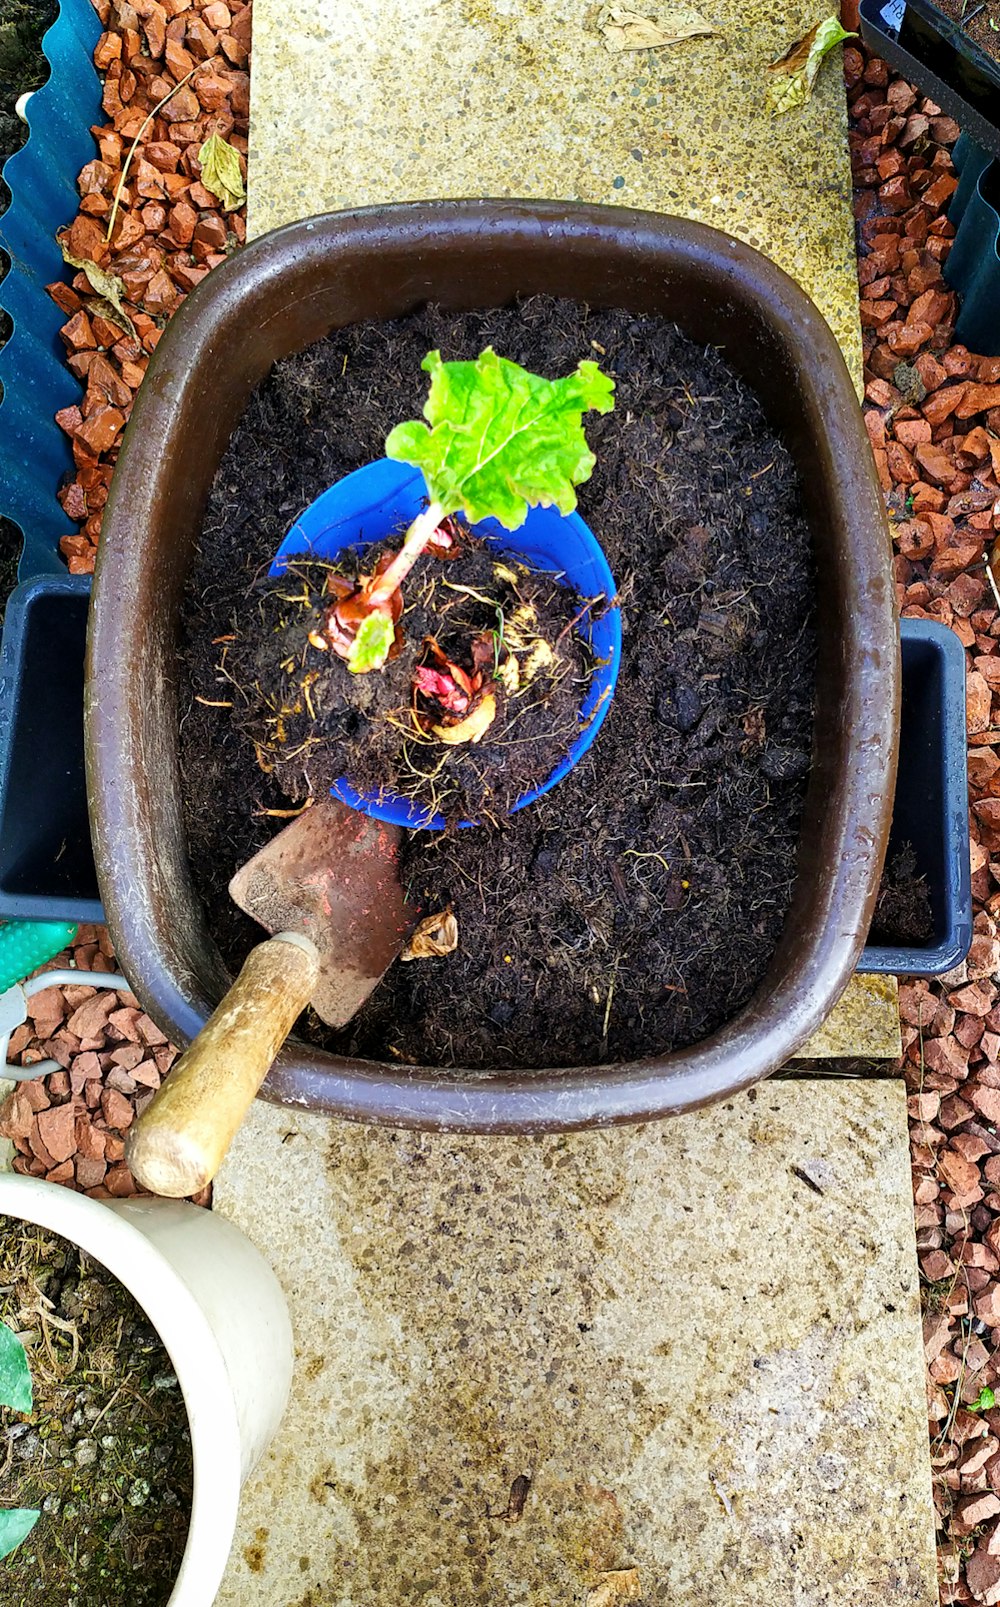 una pianta in vaso